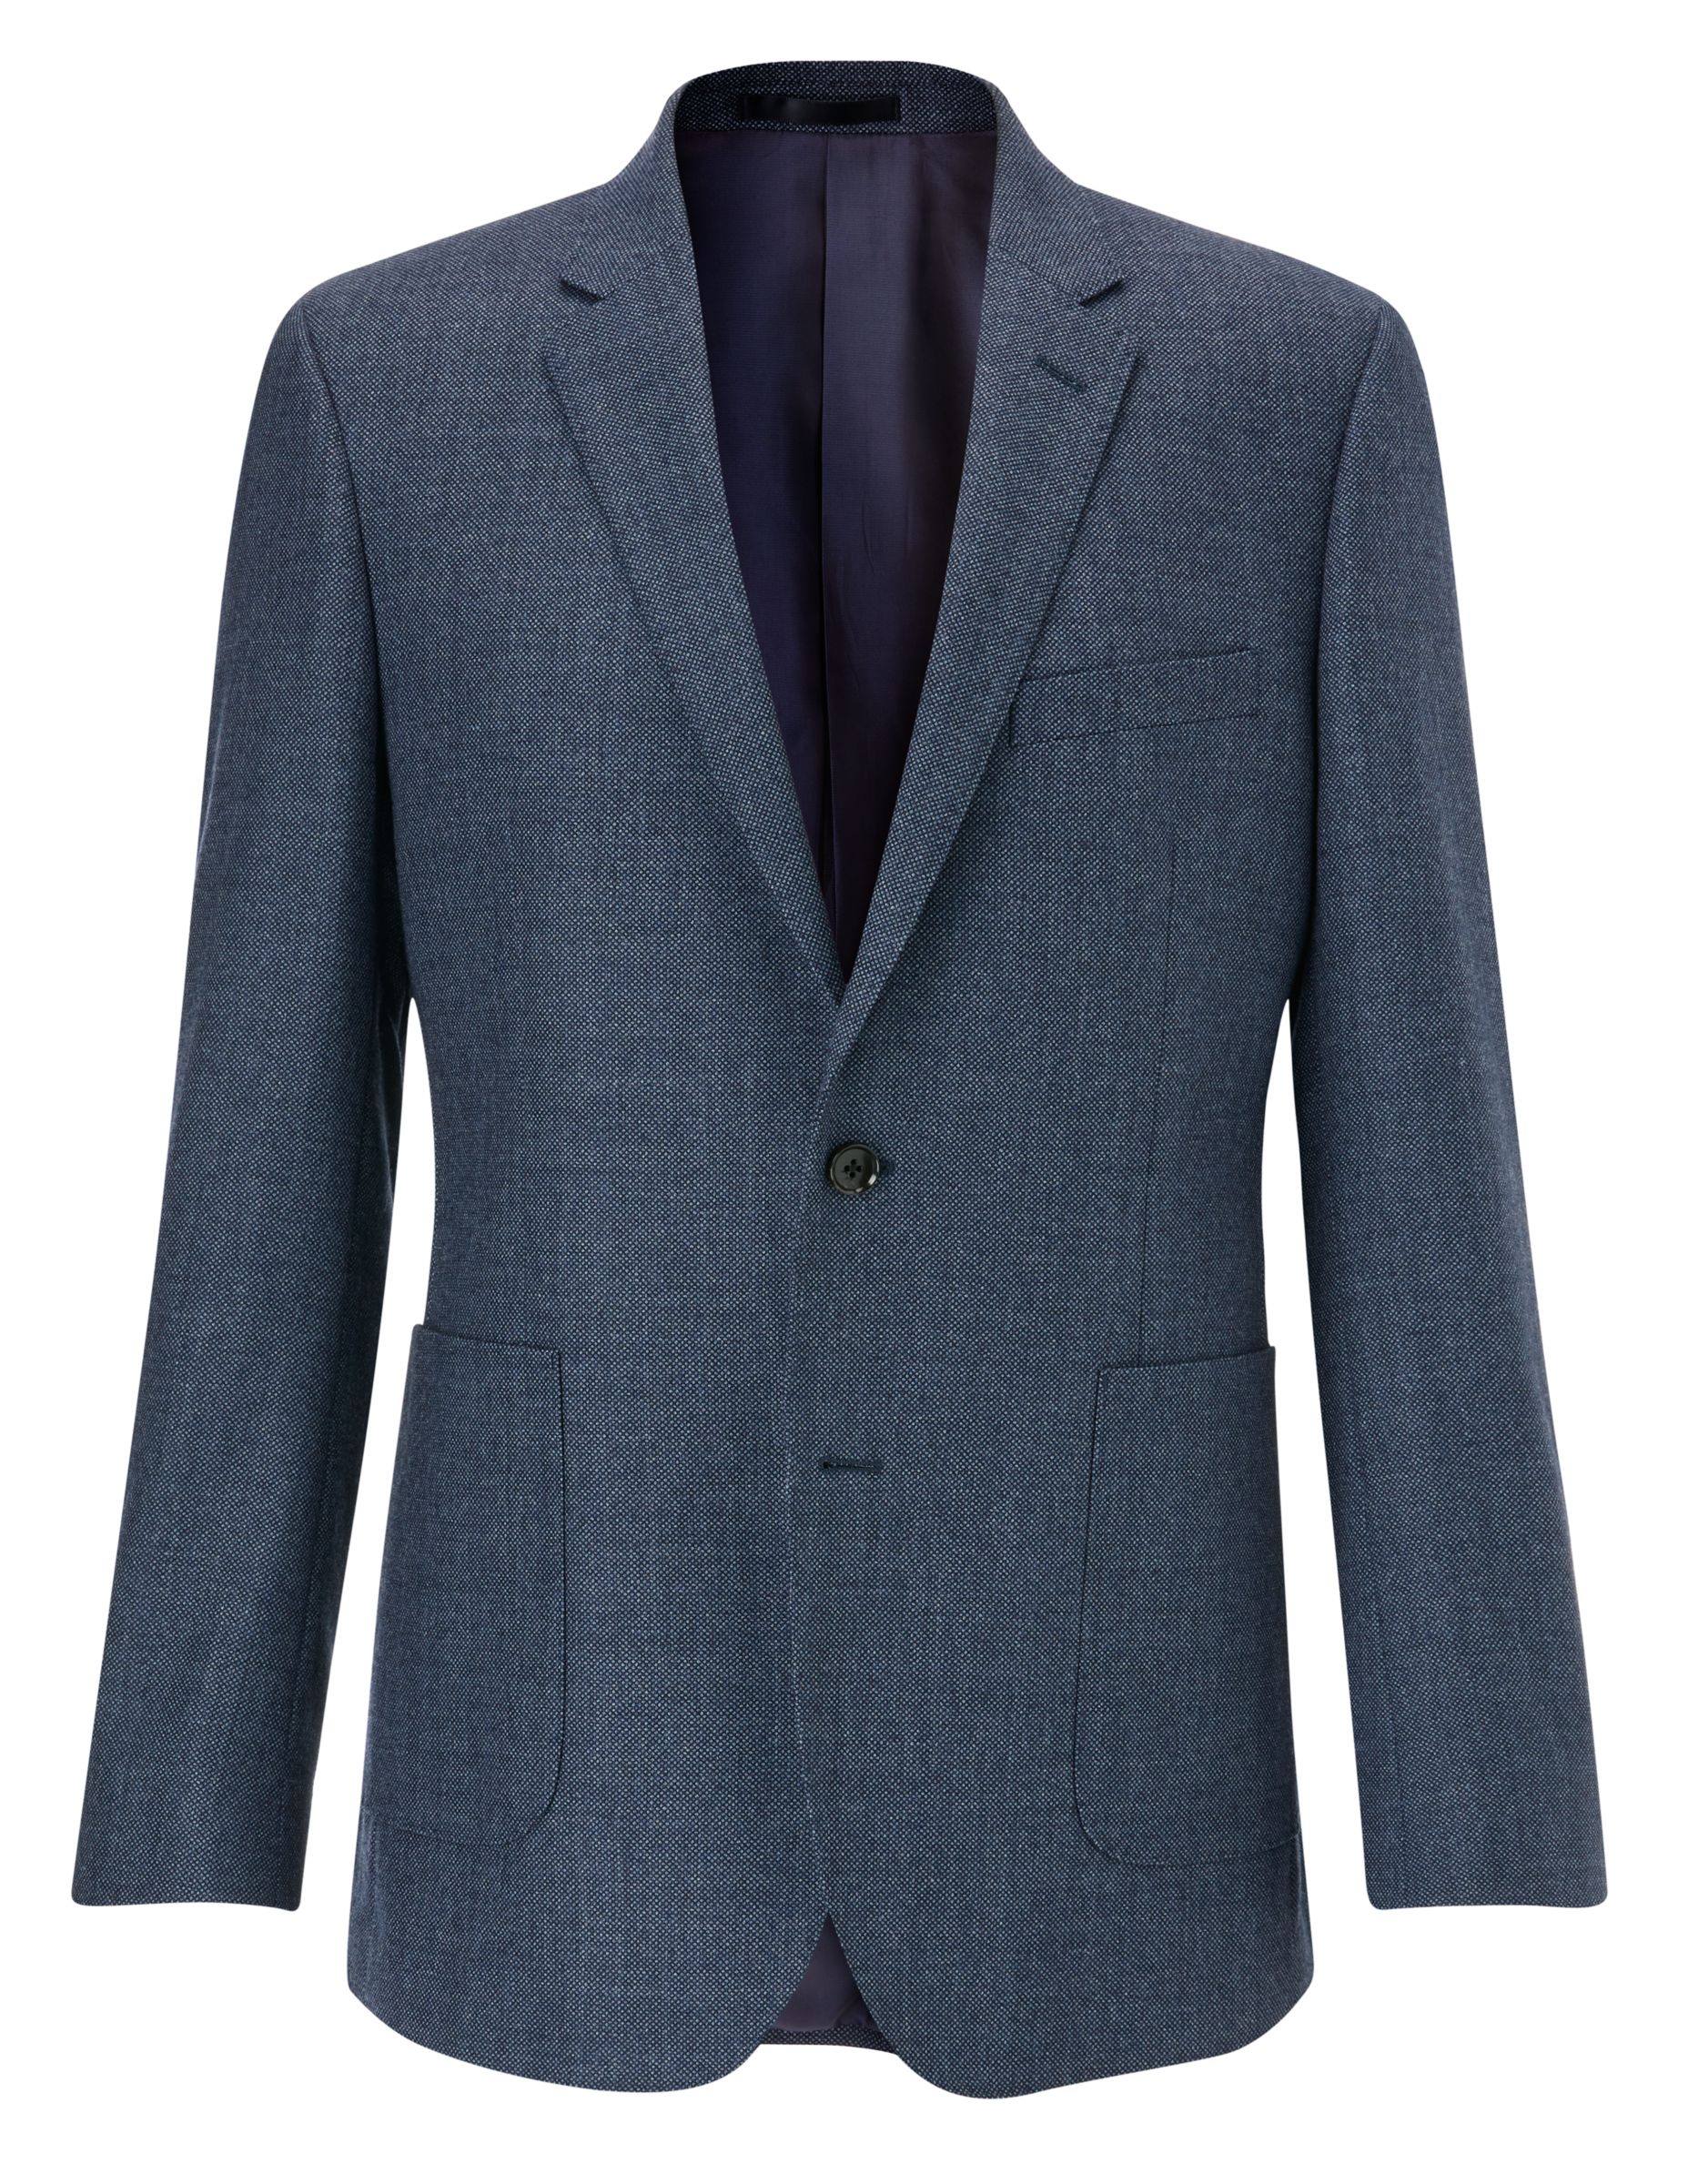 John Lewis & Partners Birdseye Wool Tailored Blazer, Blue